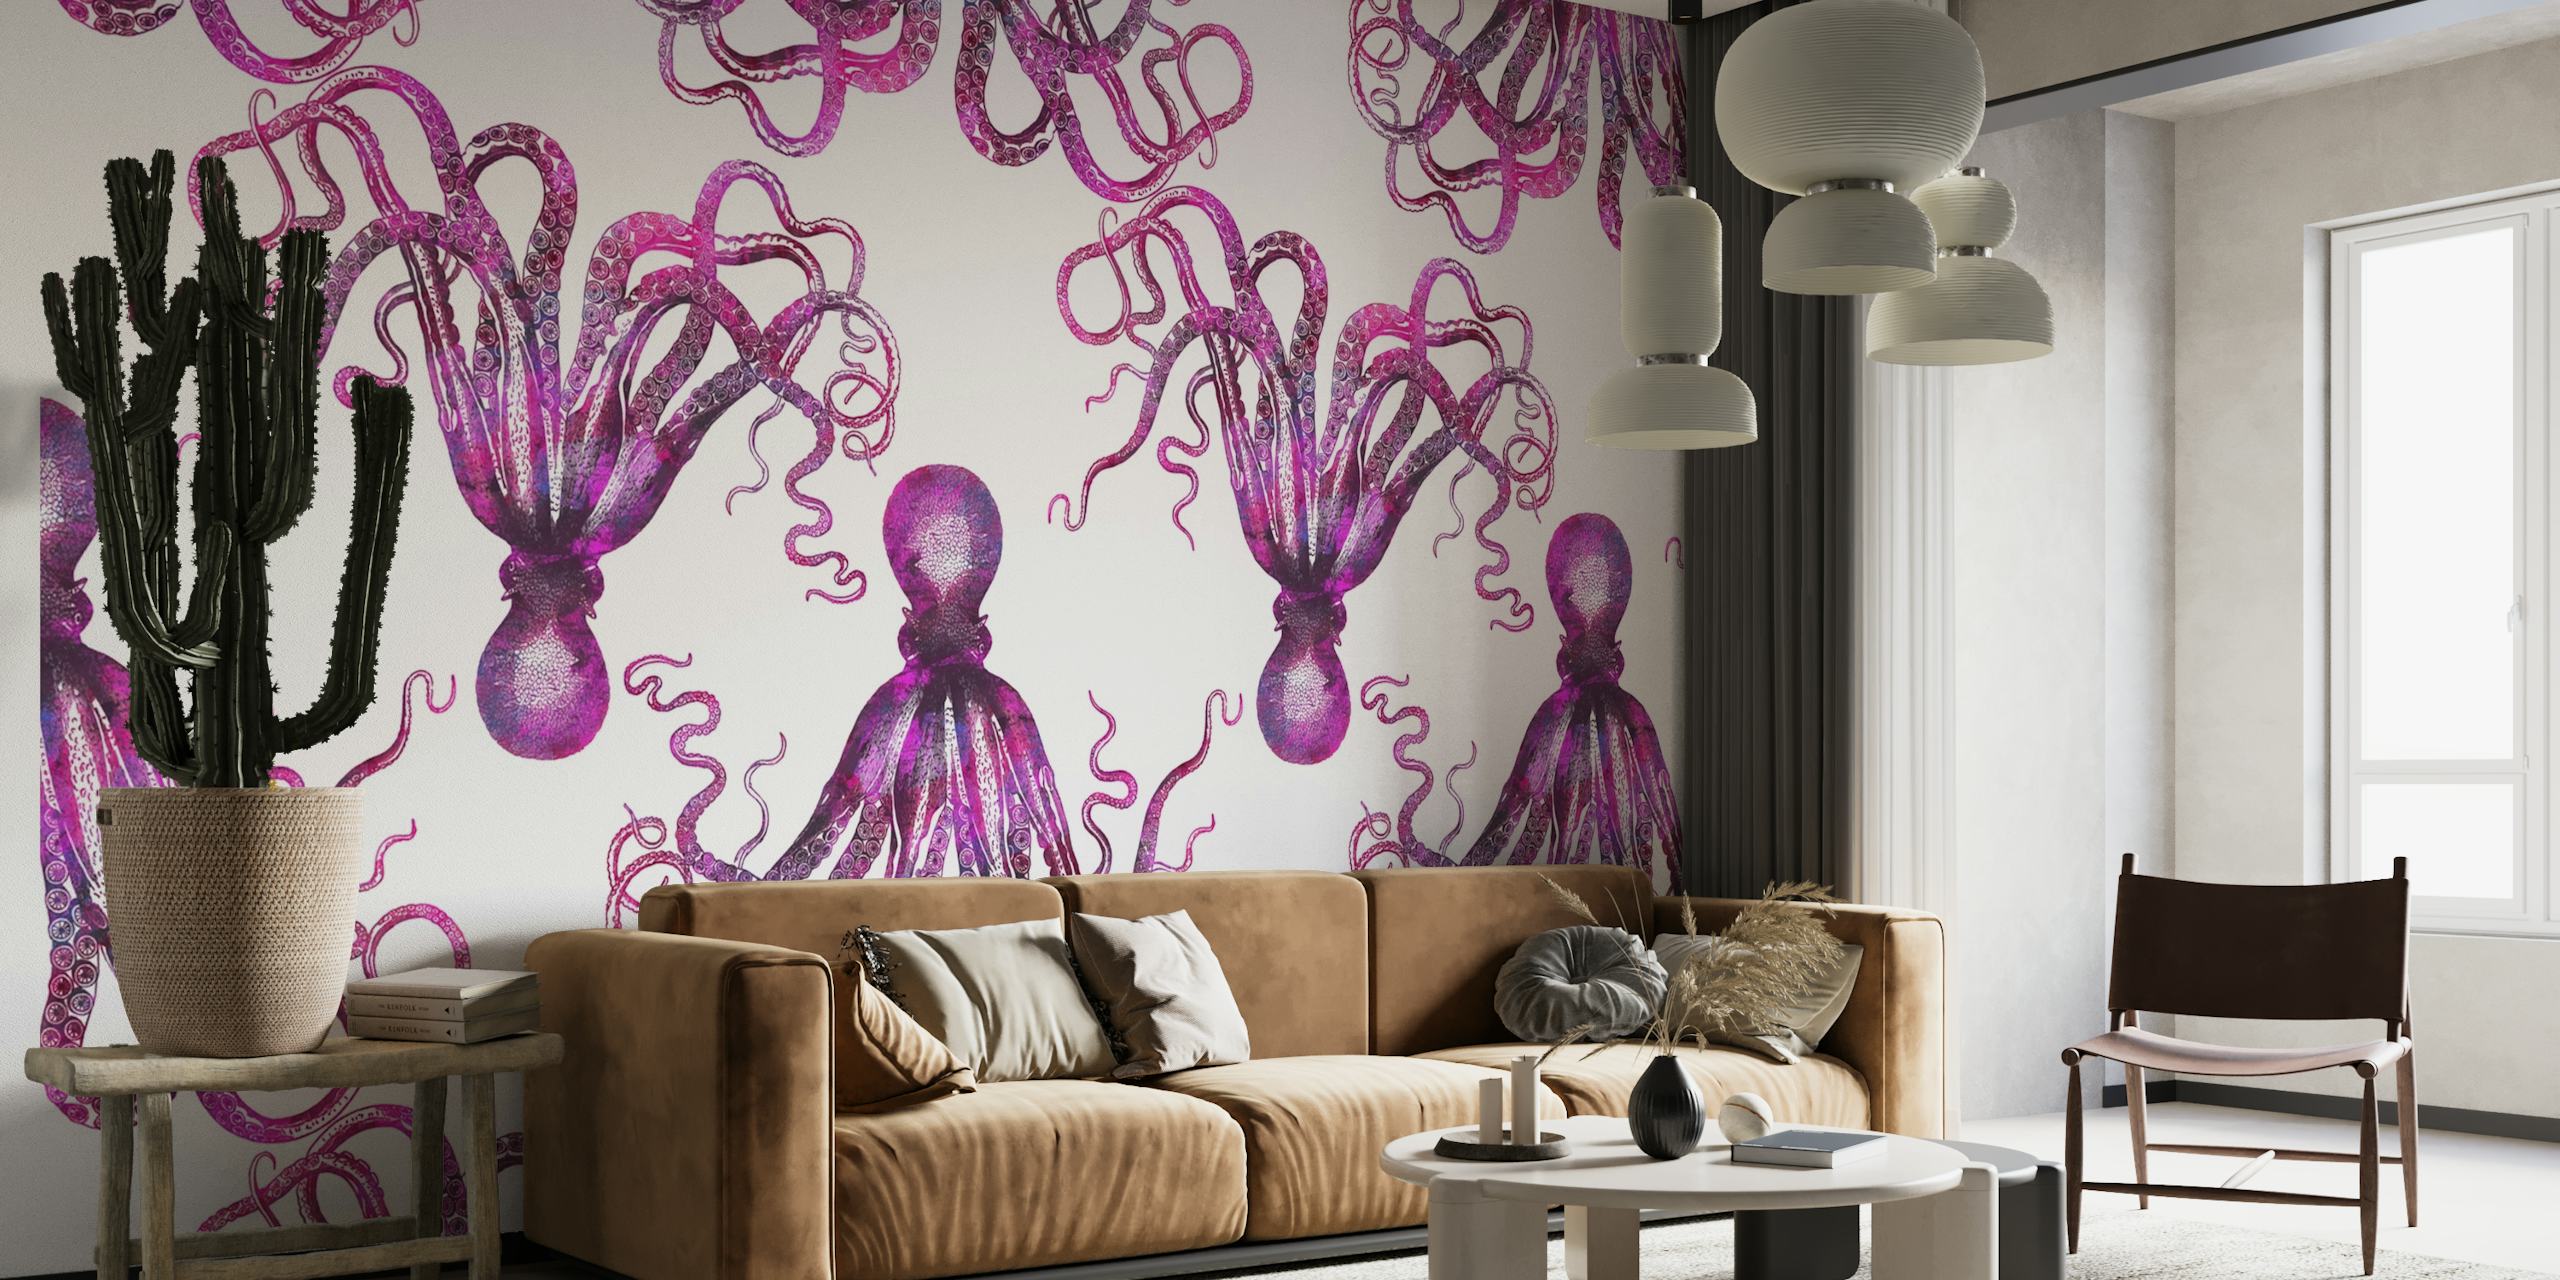 Pink Octopus papel pintado